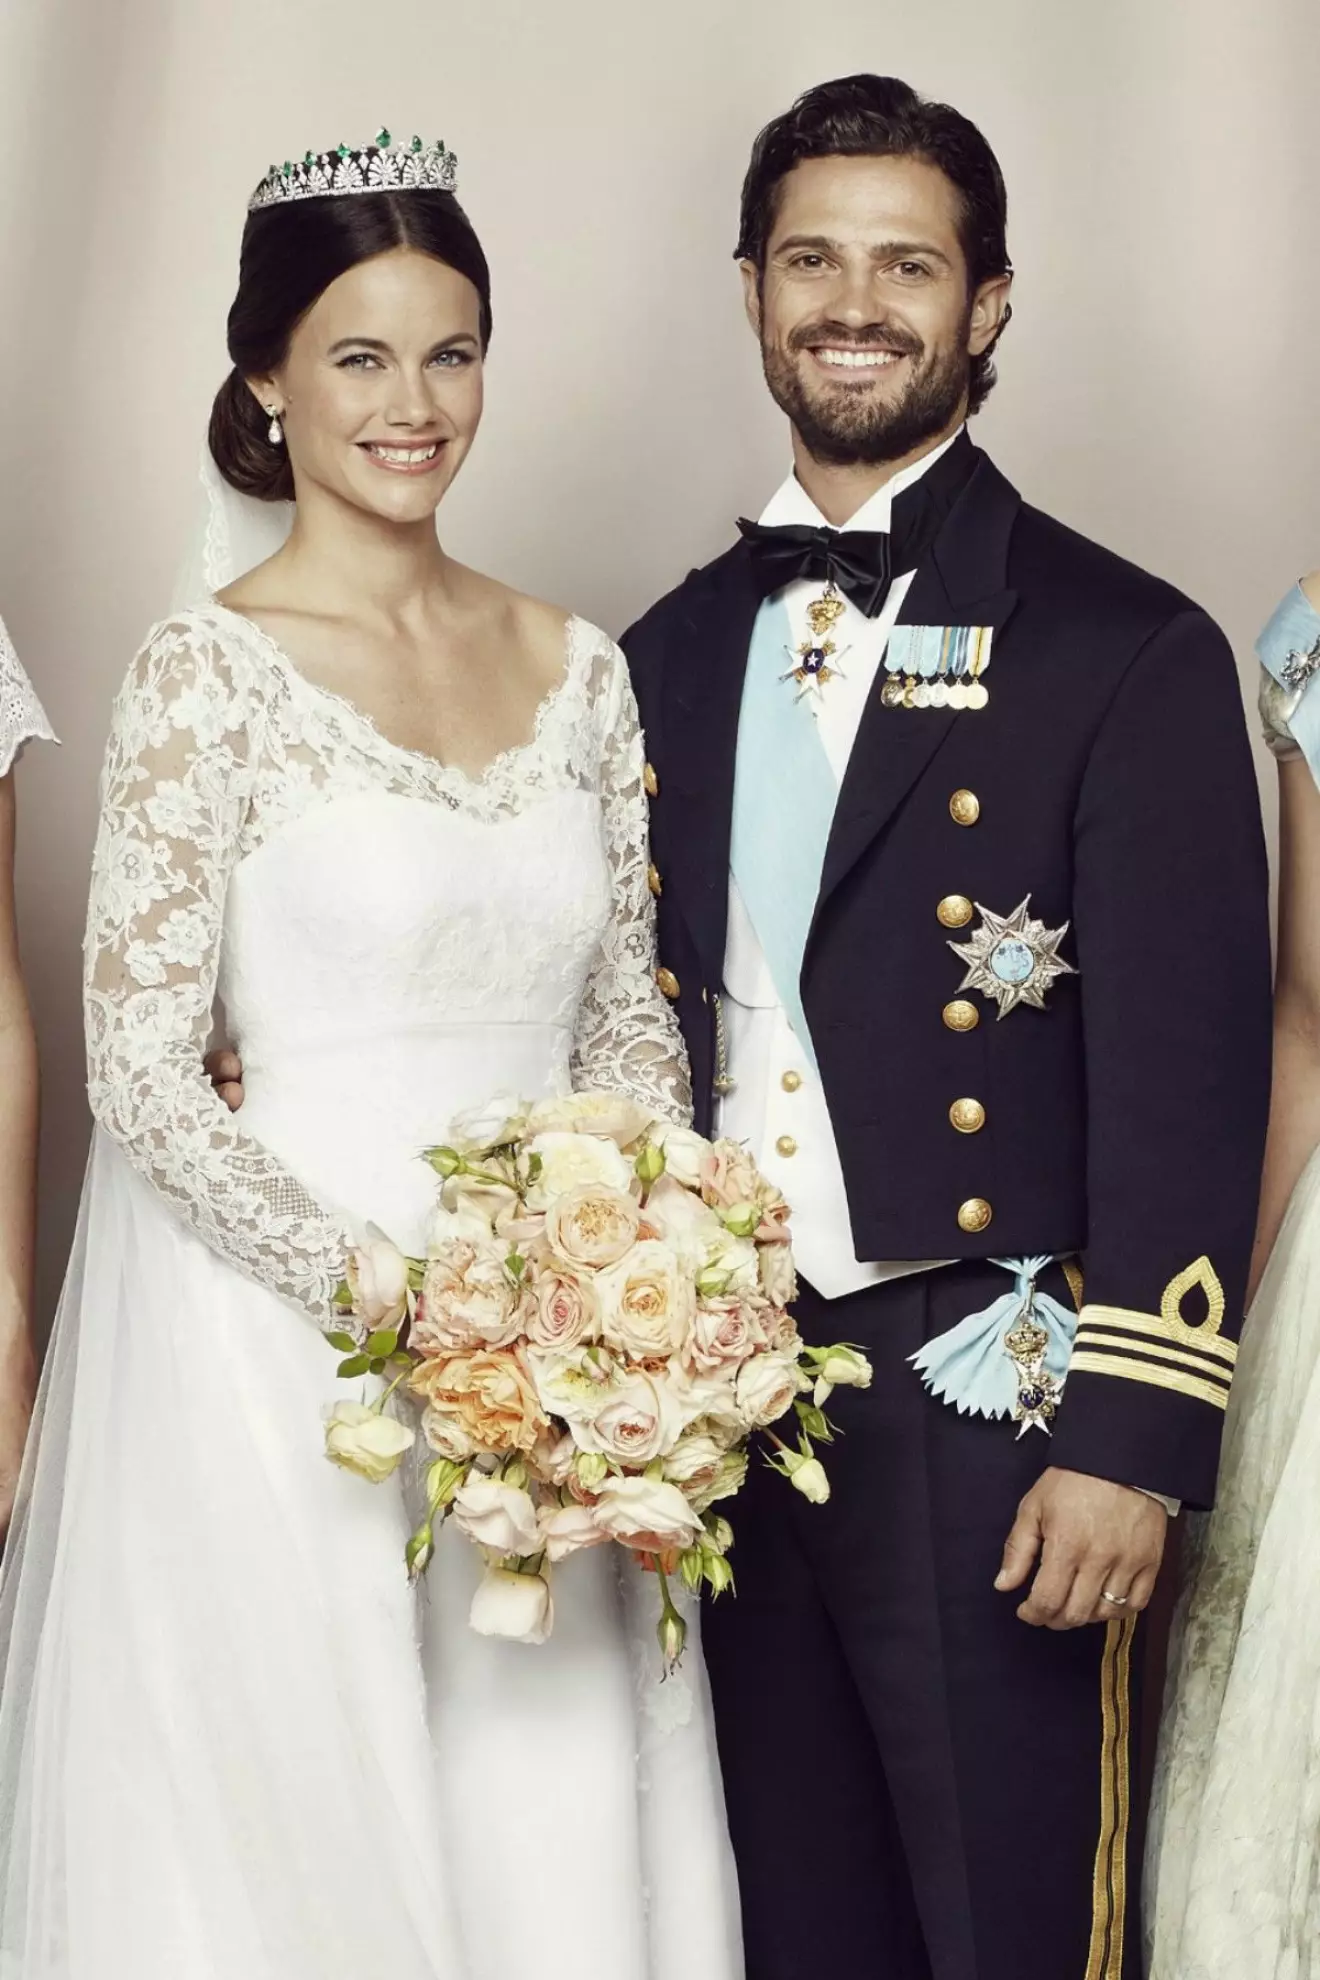 Prinsessan Sofia i sin brudklänning från Ida Sjöstedt.